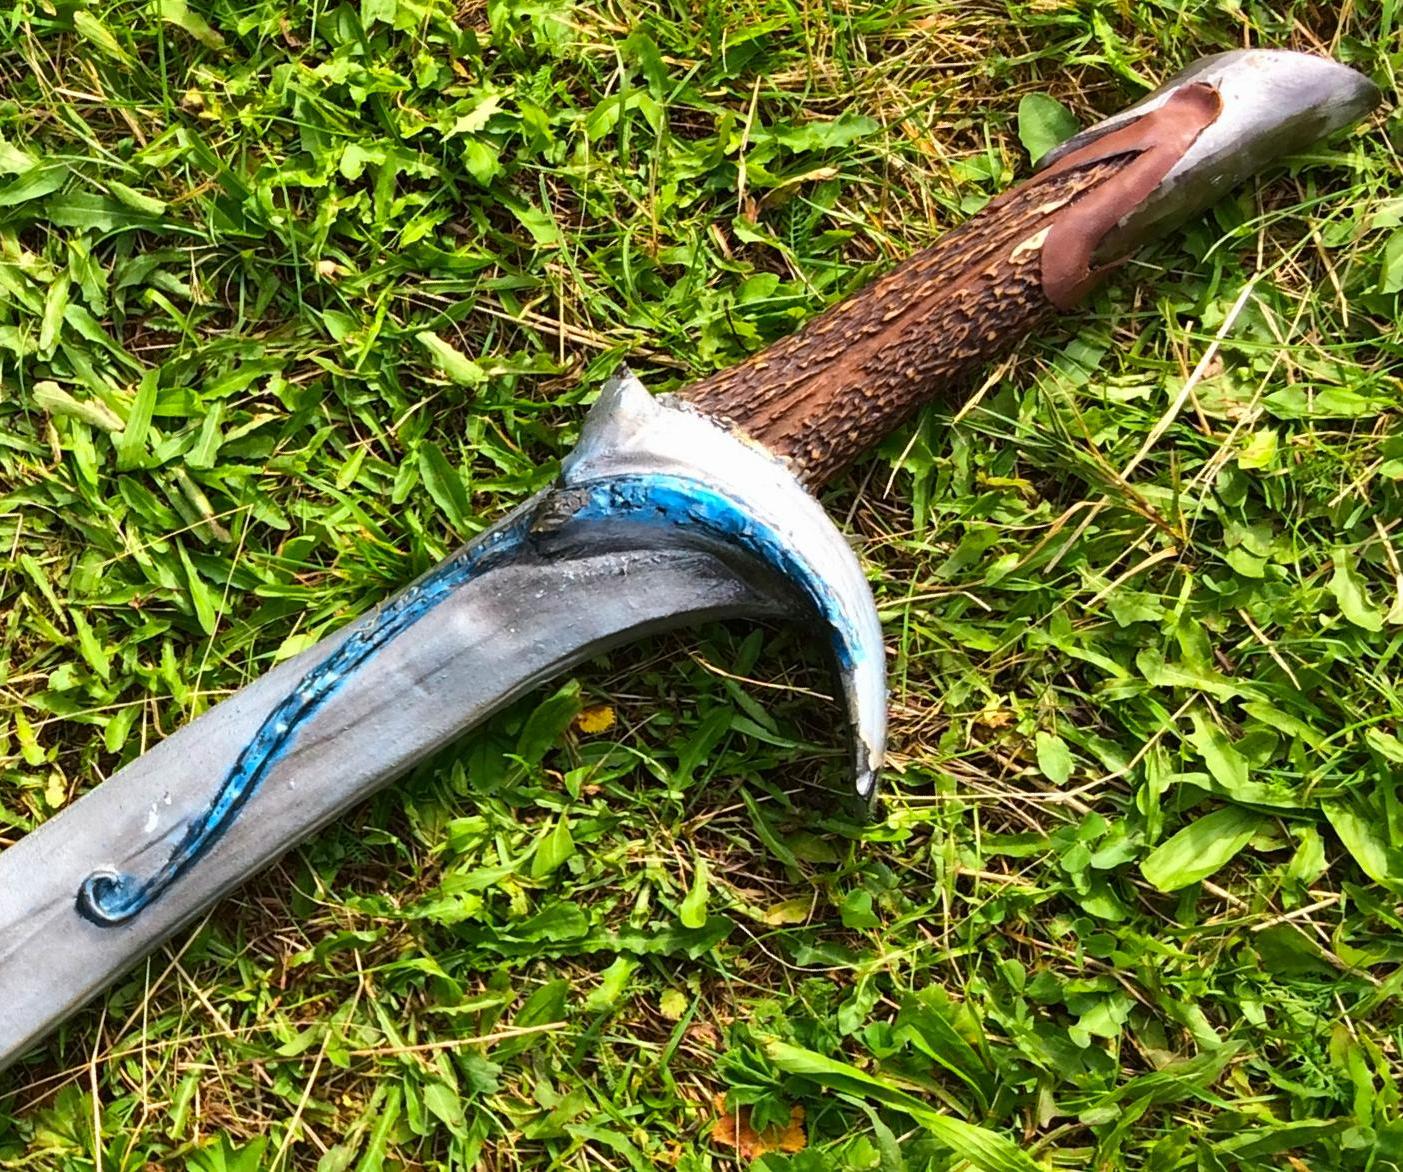 Prop Sword From the Hobbit